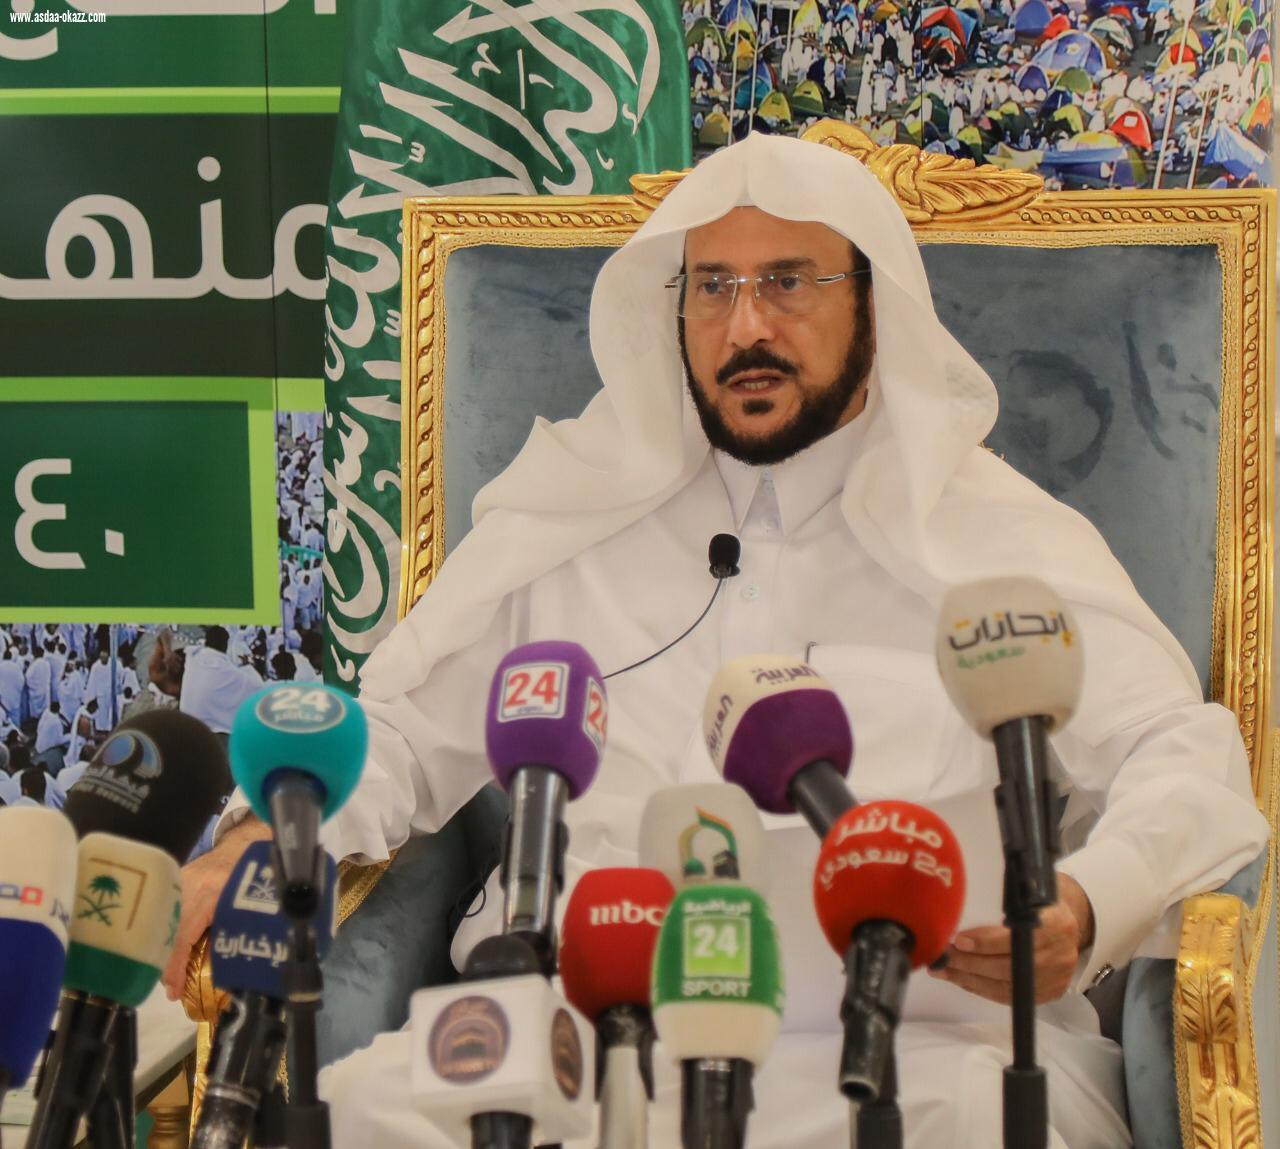 وزير الشؤون الإسلامية: الحج ليس ميدانا لرفع الشعارات الطائفية والسياسية والحزبية  دشن الحملة الدعوية الإرشادية الأولى